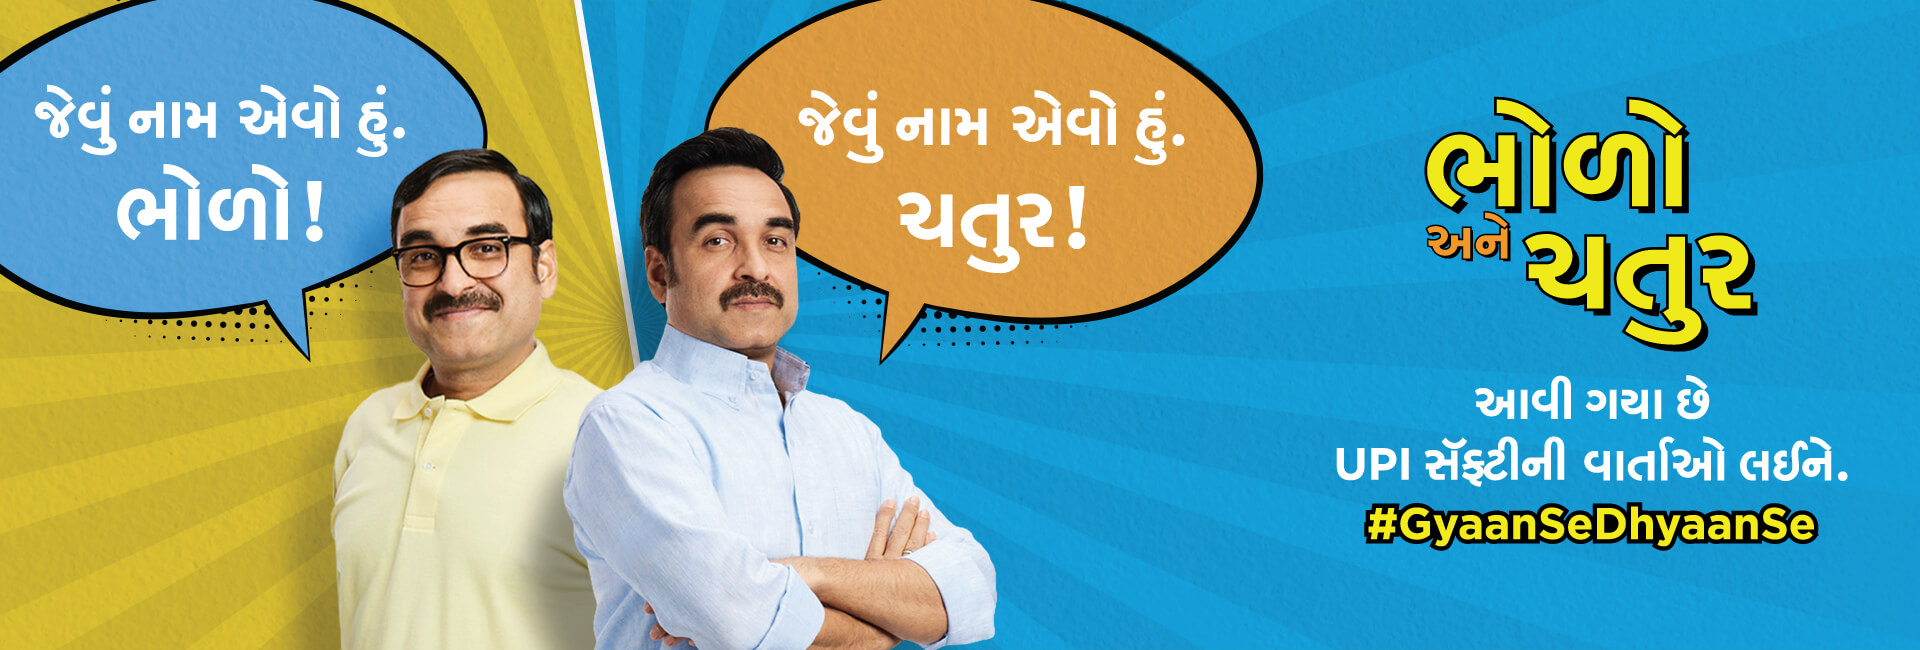 UPI Safety Campaign Gujarati